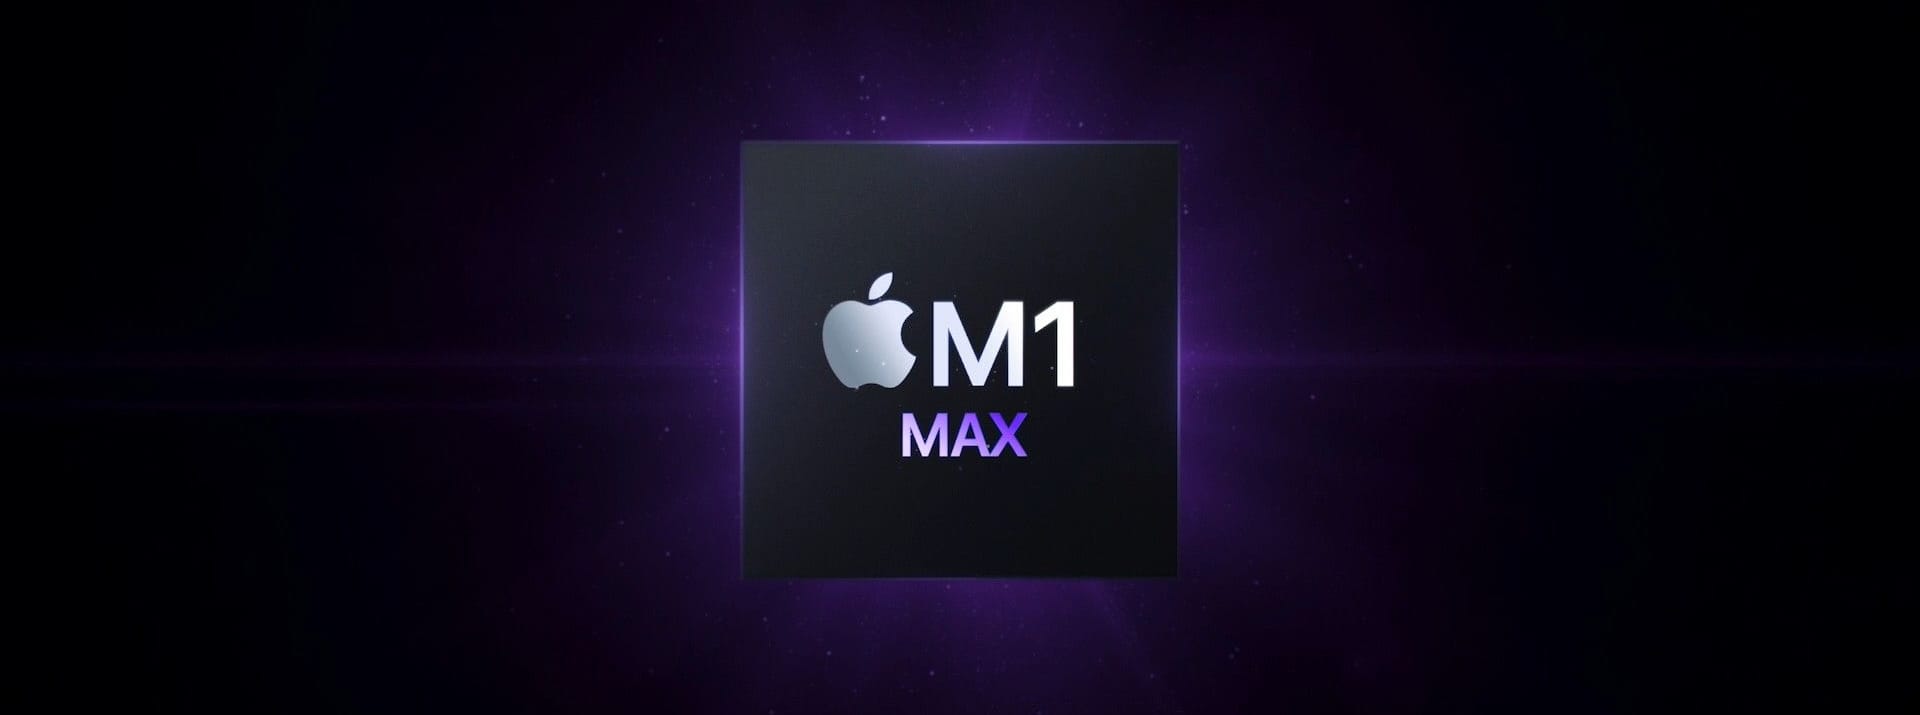 Zu den Highlights der neuen Modelle zählt der M1-Chip: Apples selbstentwickelter Prozessor besitzt in der Topversion als M1 Max bis zu 10 CPU-Kerne und 32 Grafikkerne. Es ist der leistungsstärkste Chip, den Apple bisher vorgestellt hat.